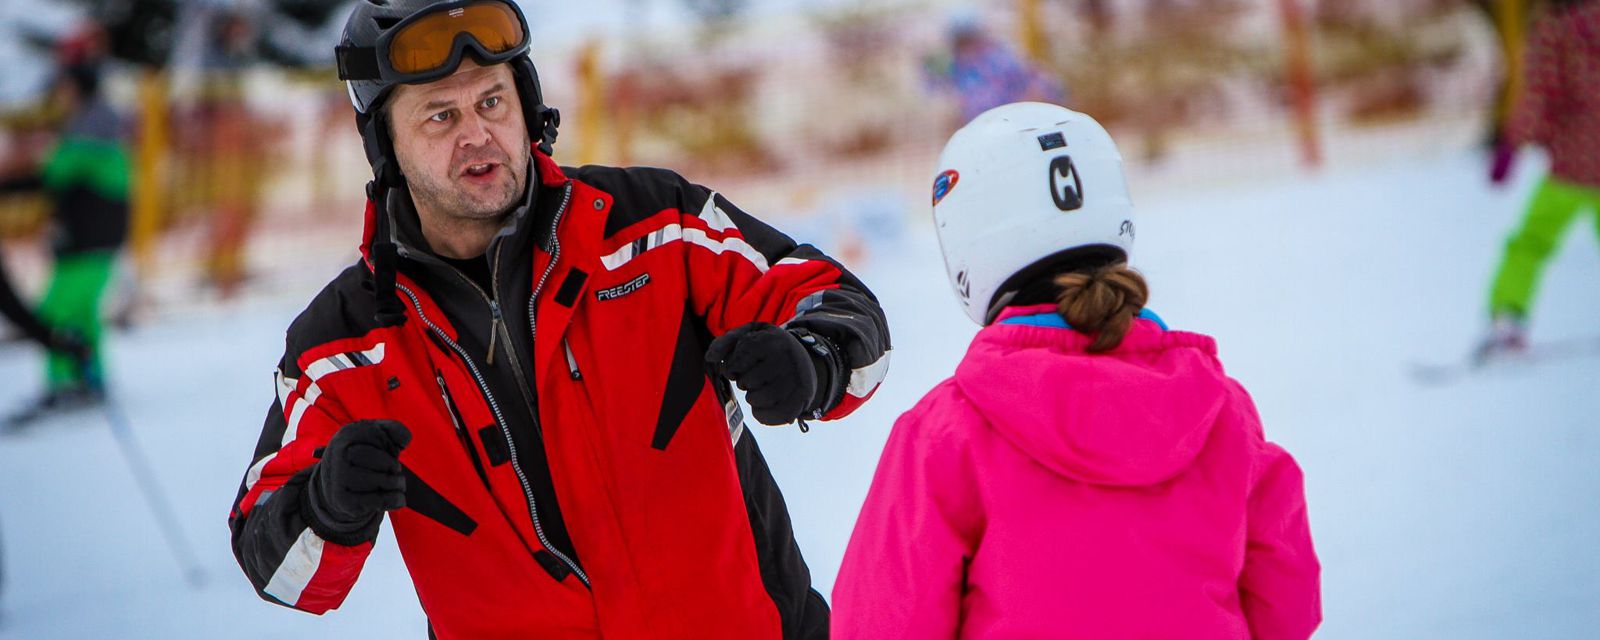 Pan Witek nauczy jeździć na nartach nawet snowboardzistę :)